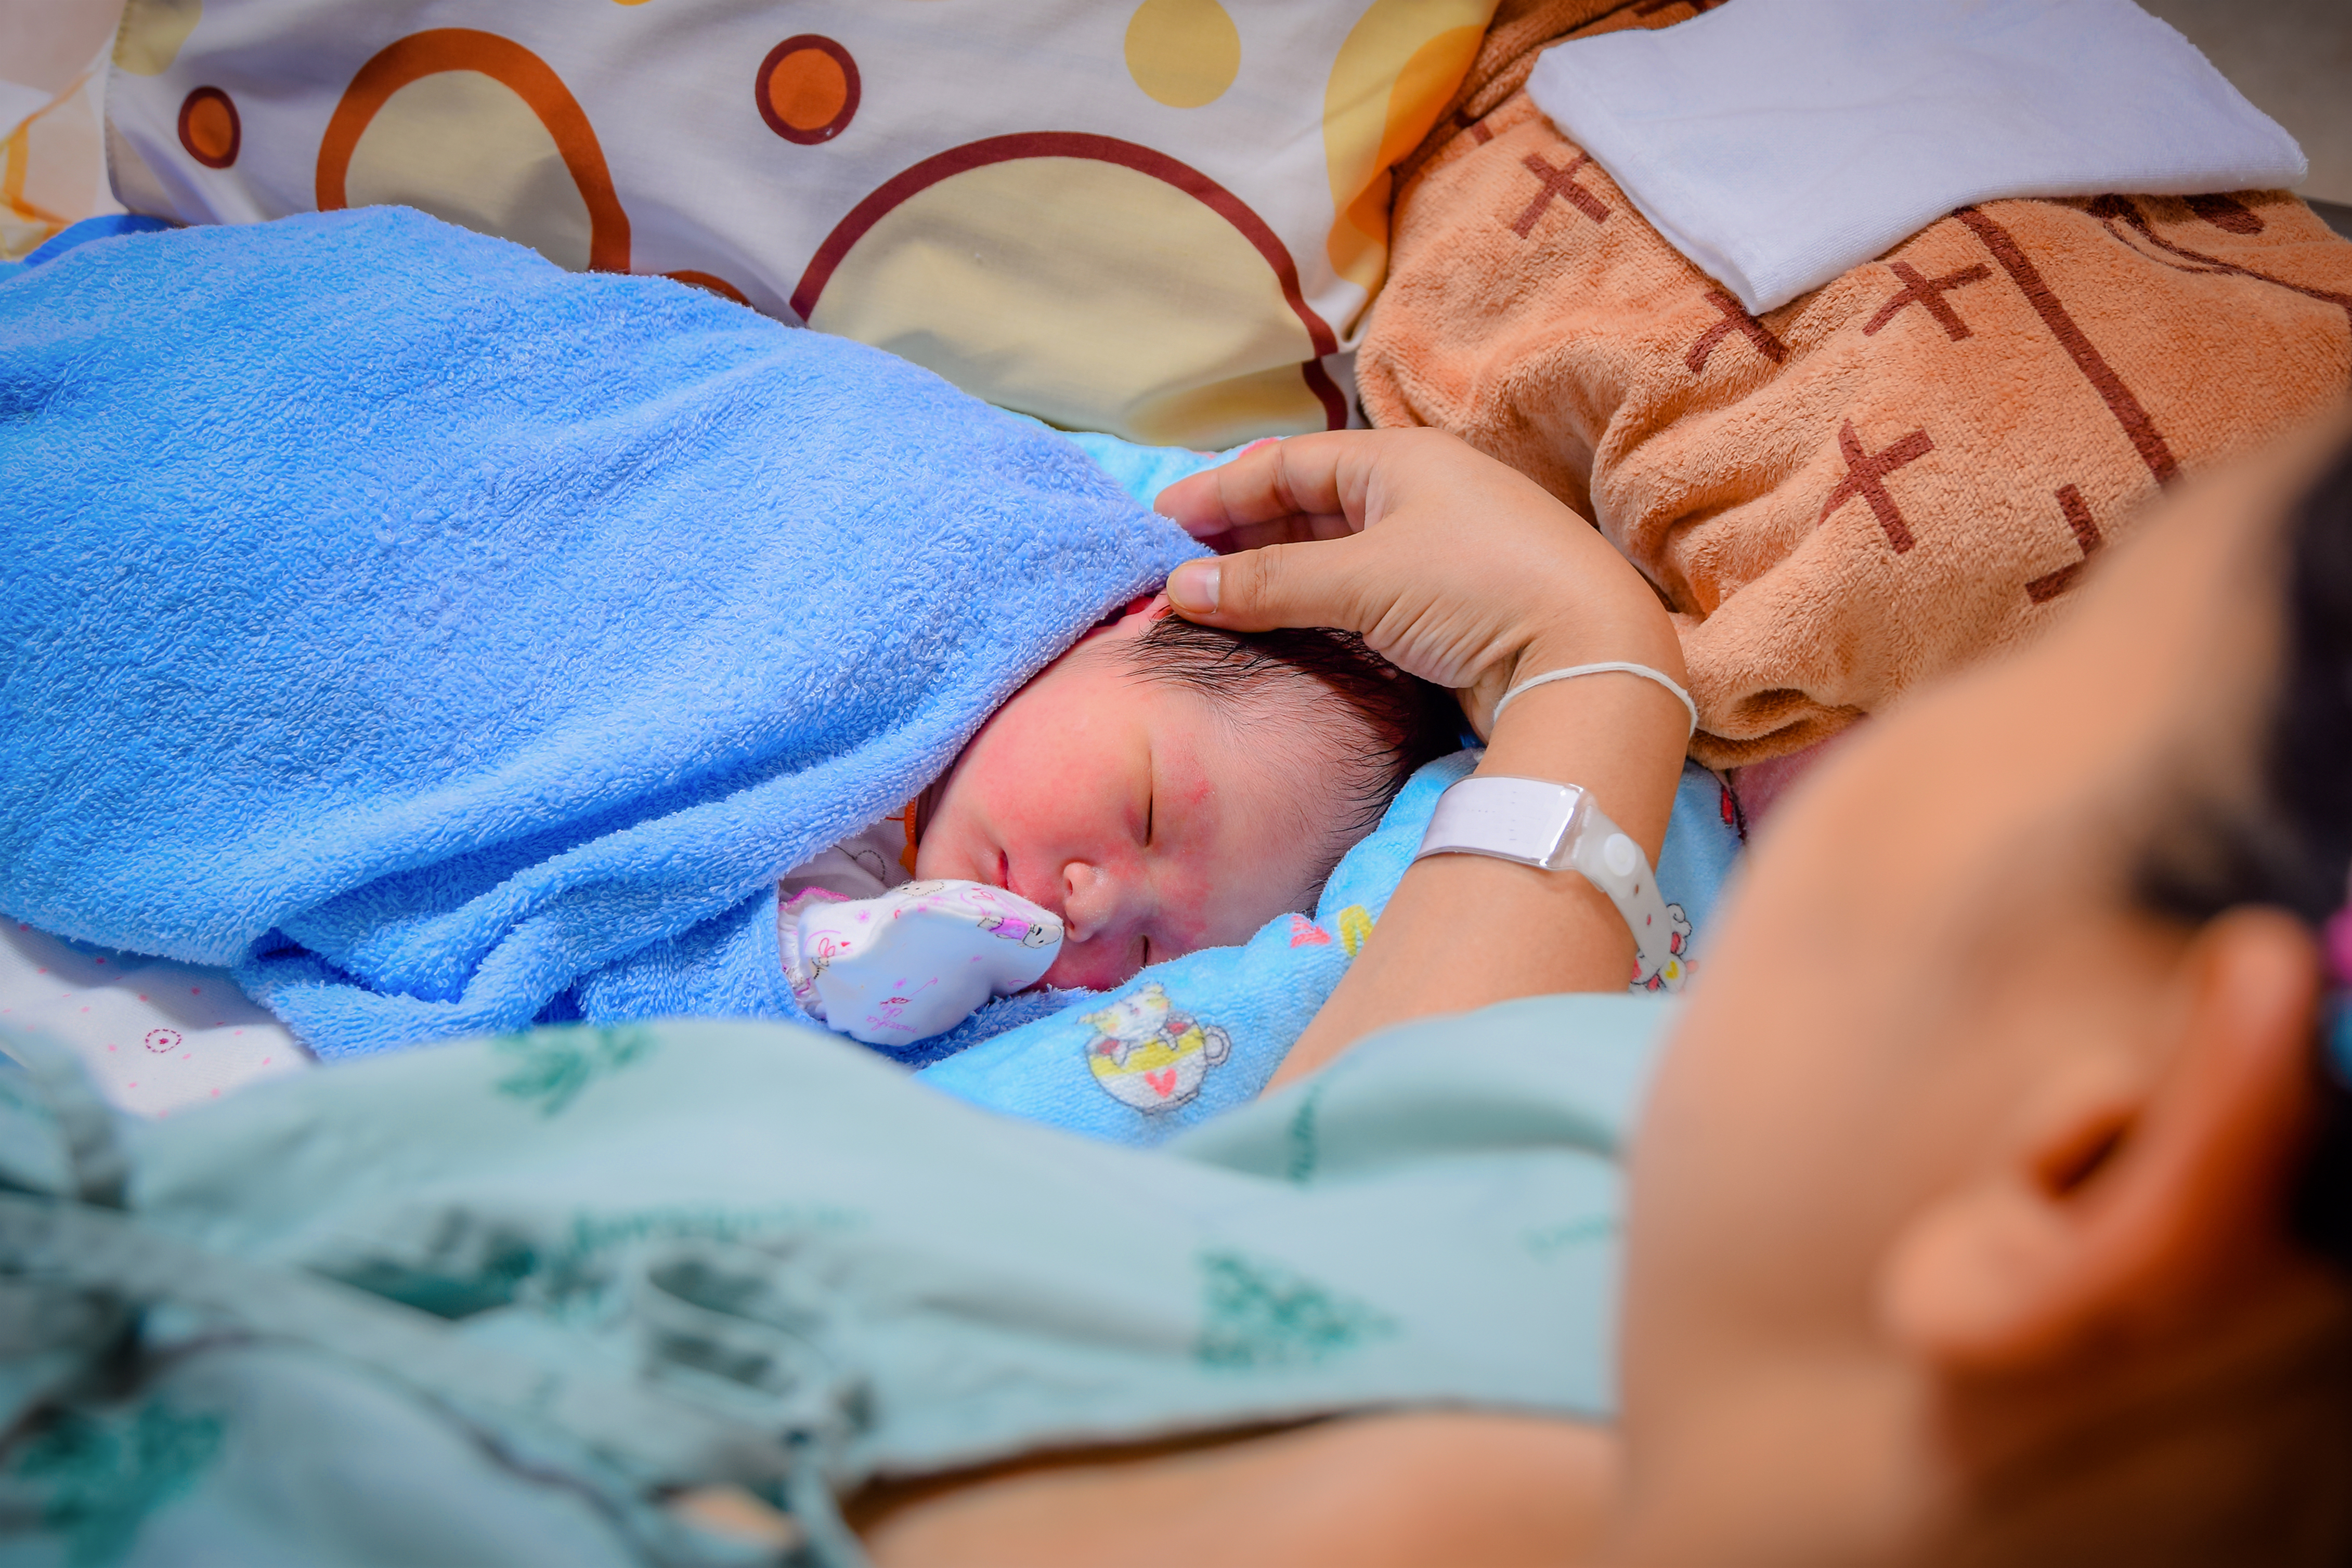 Recién nacido y madre en el hospital tras dar a luz | Fuente: Shutterstock.com